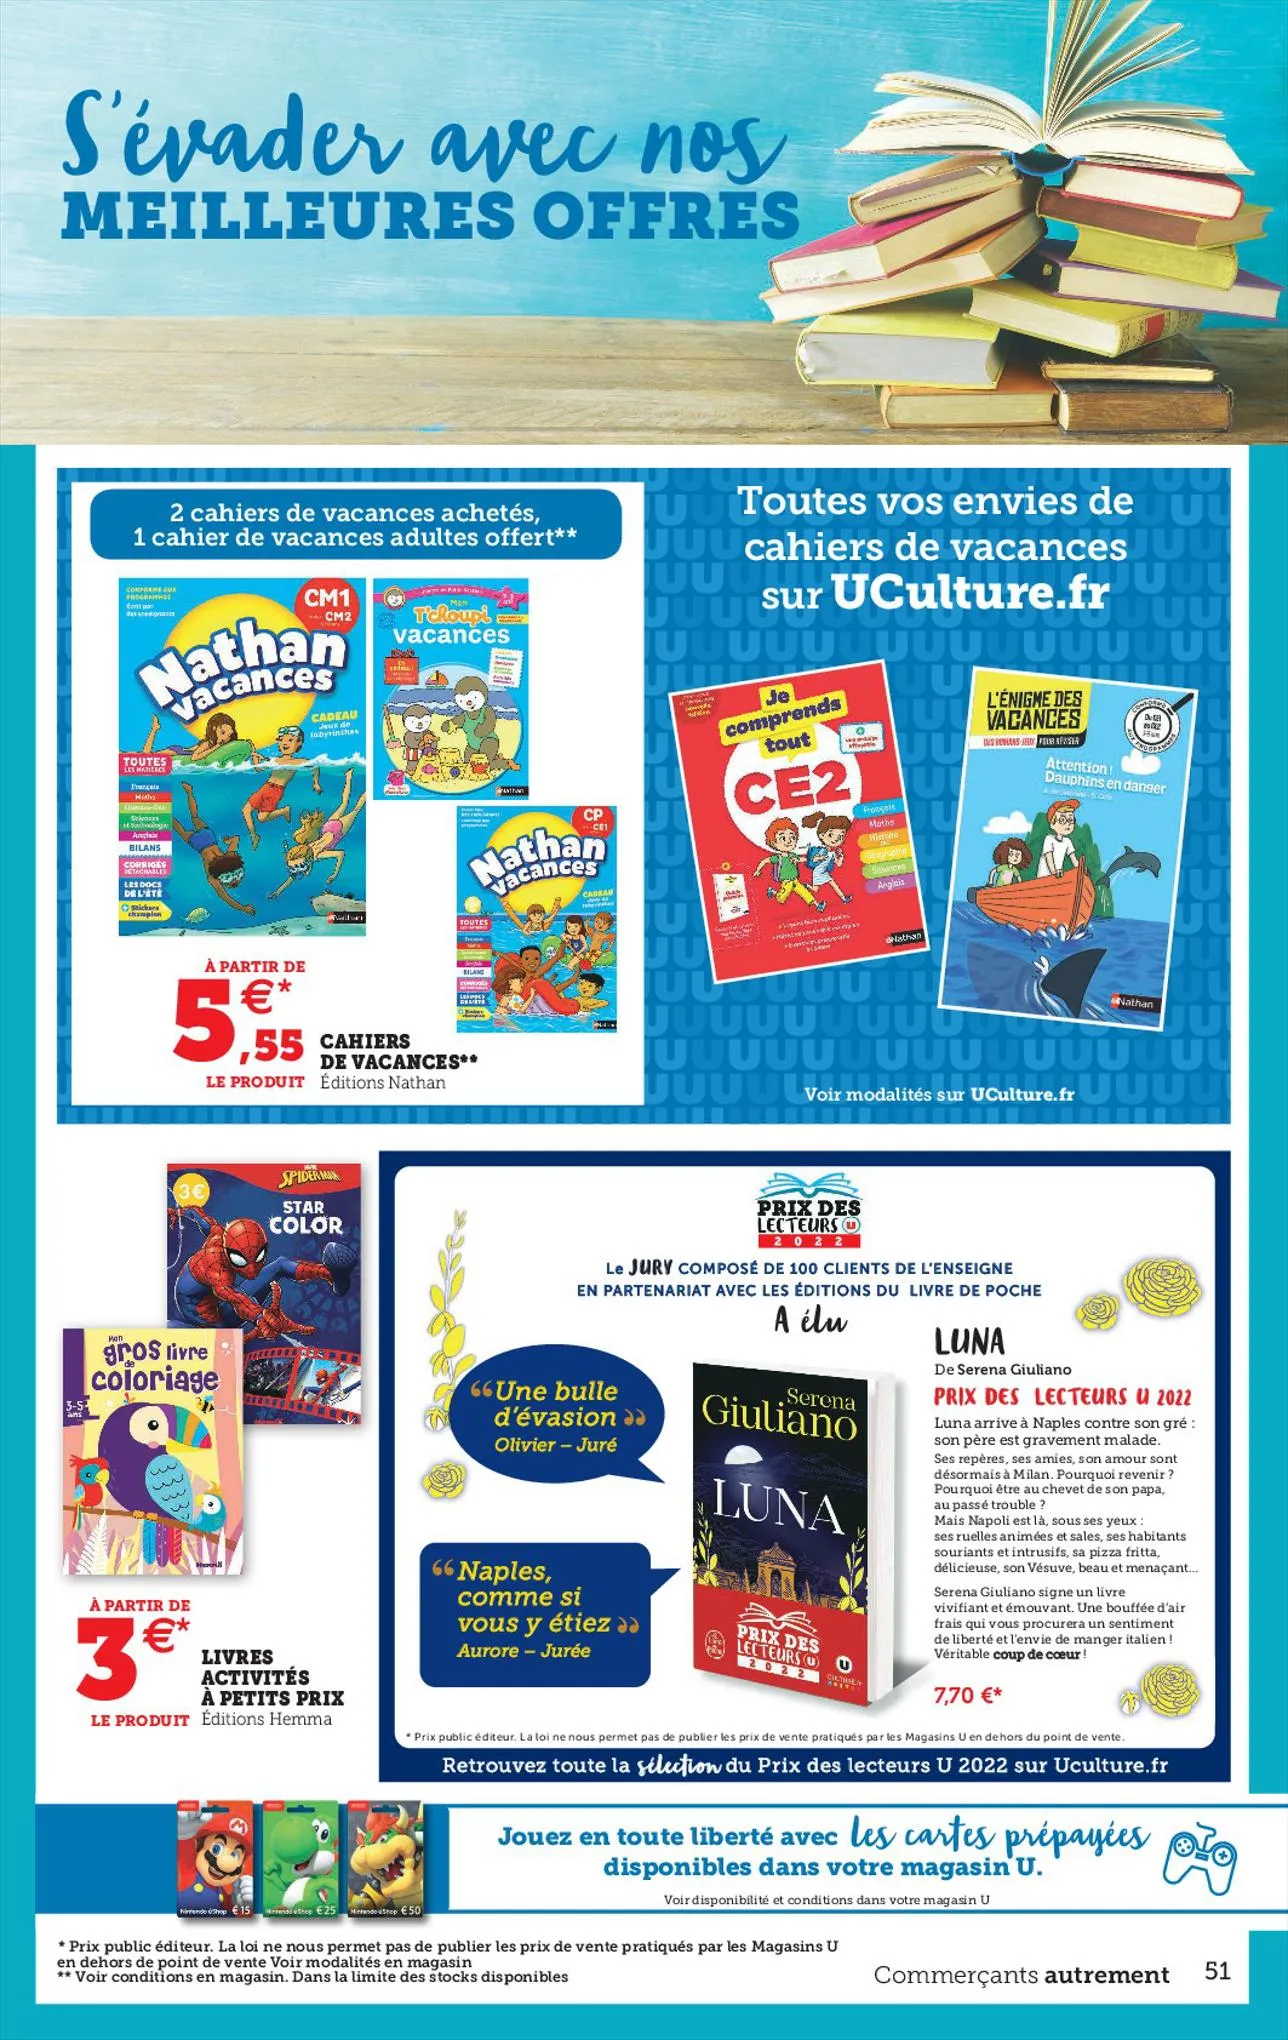 Catalogue DU BIO DU CHOIX DES ÉCONOMIES, page 00051